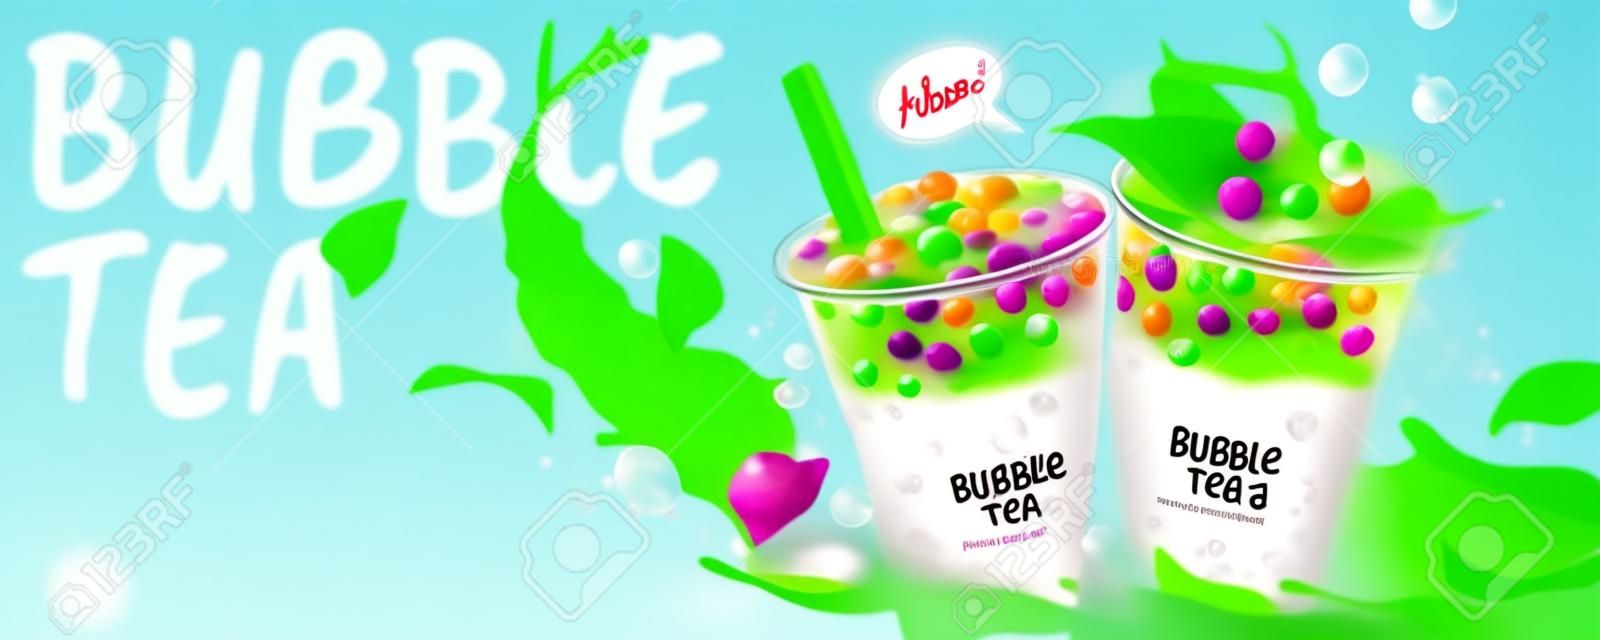 Annunci di banner di Bubble Tea con spruzzi di latte e foglie verdi, illustrazione 3d